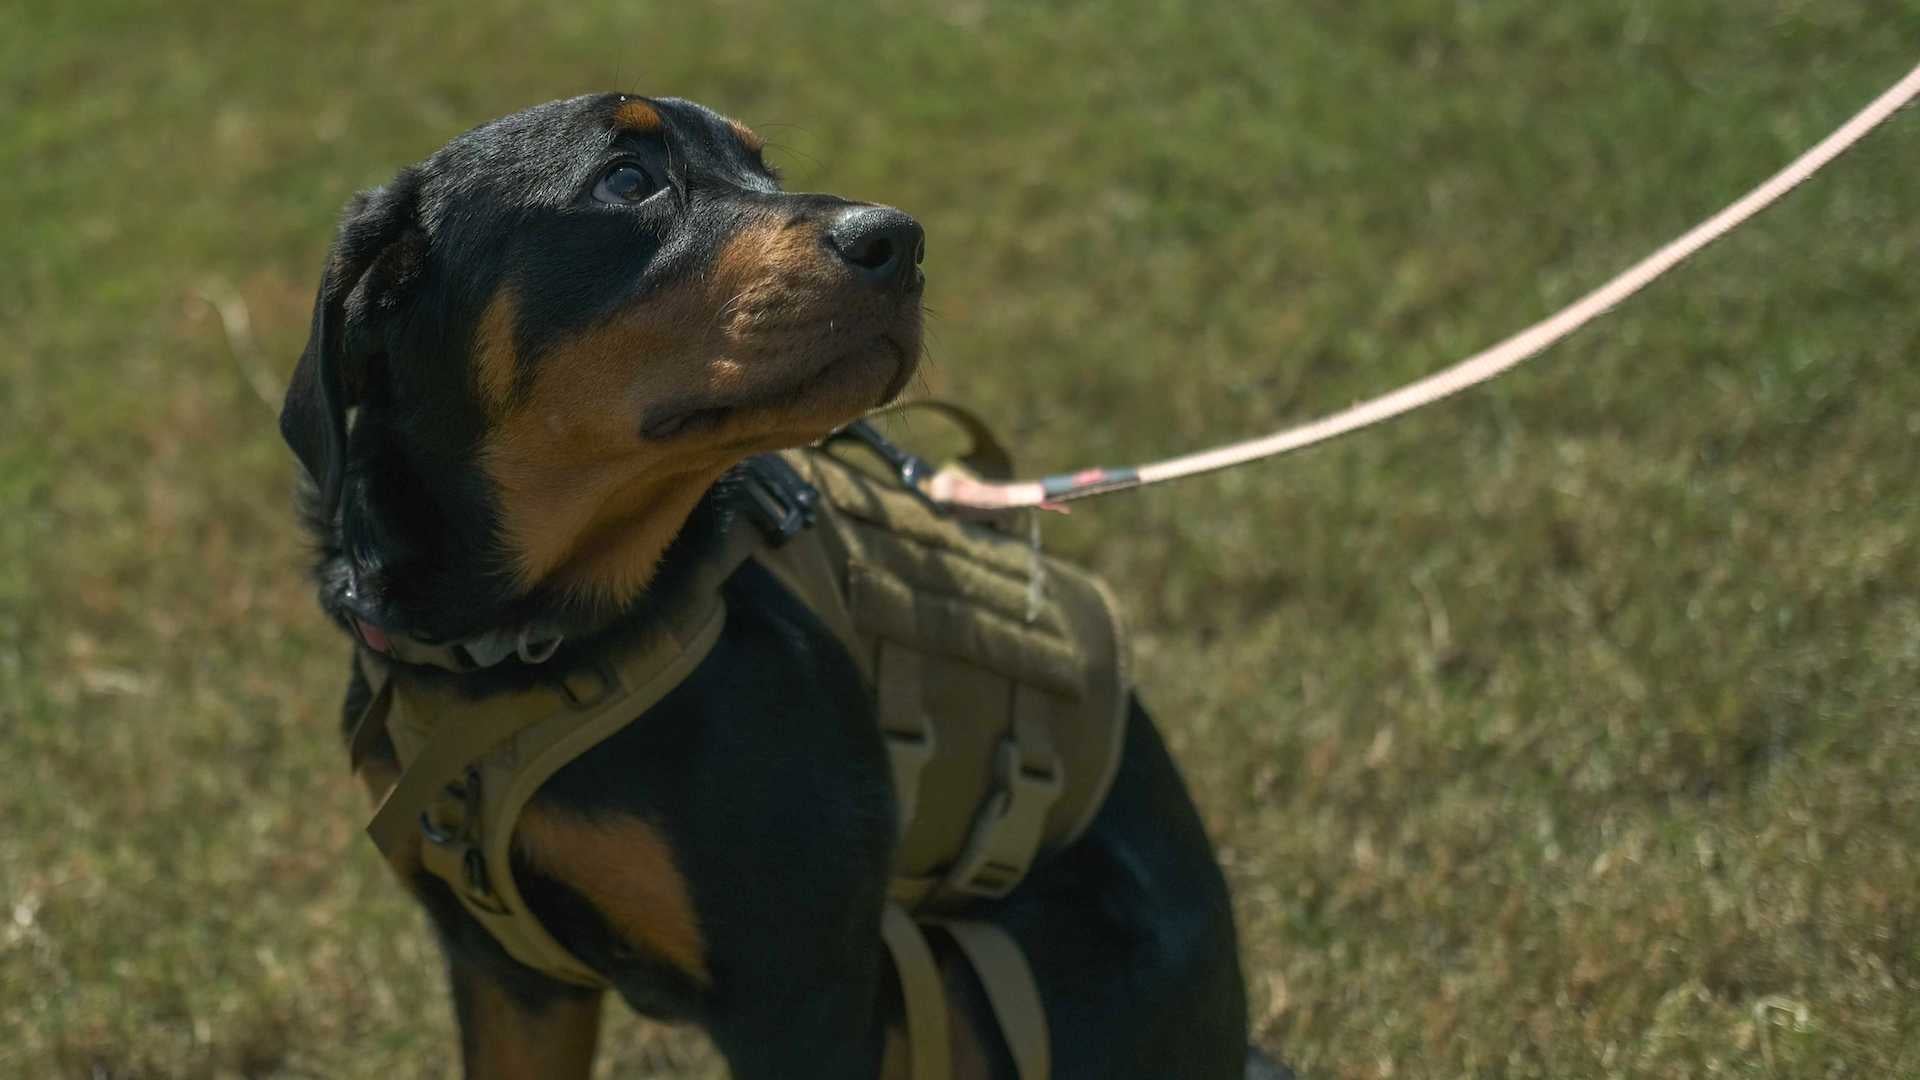 Vests for Service Dog In Training Vest